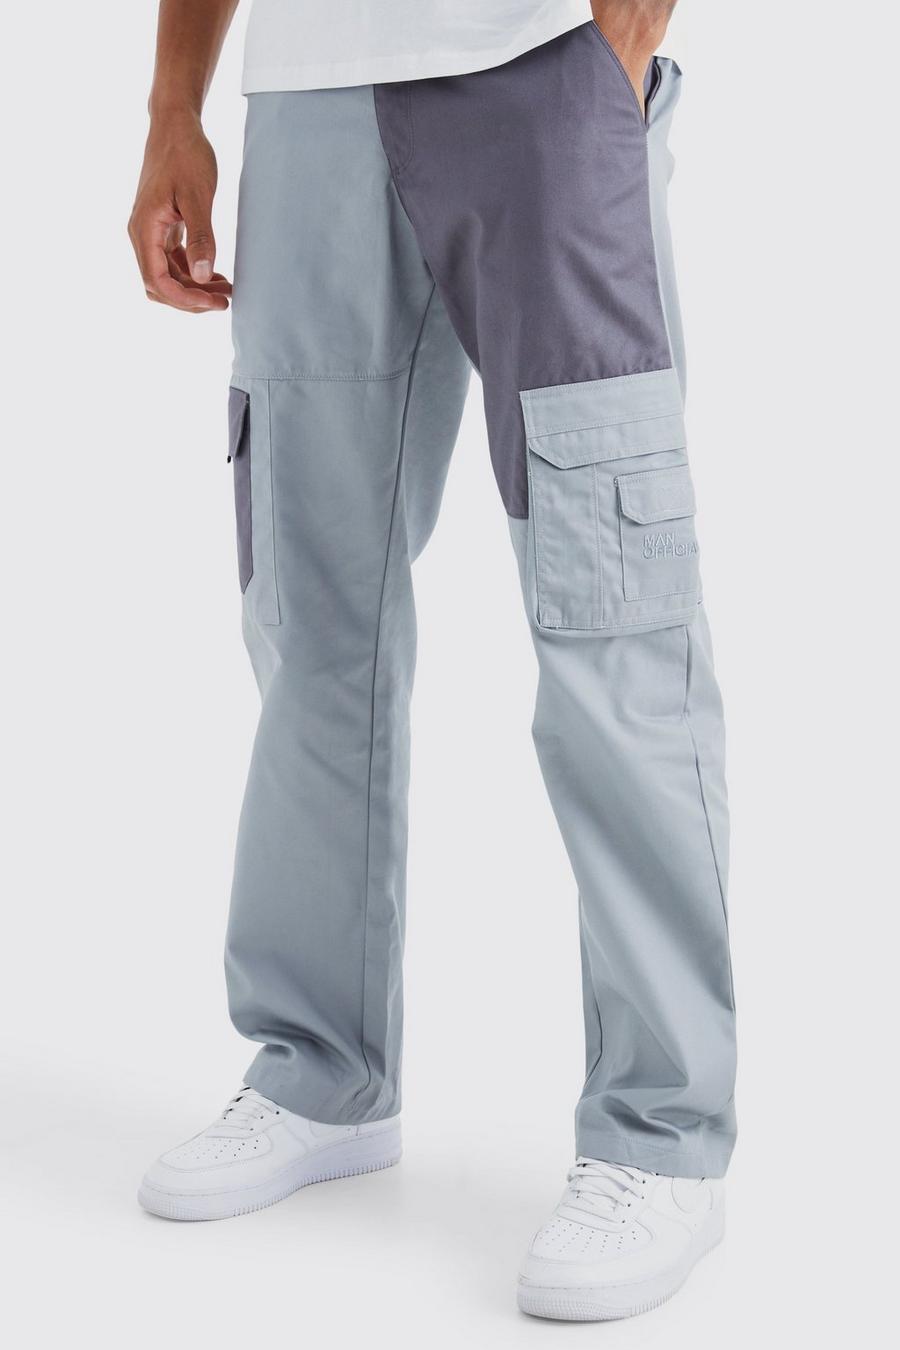 Pantaloni Cargo Tall rilassati a blocchi di colore con logo tono su tono, Charcoal